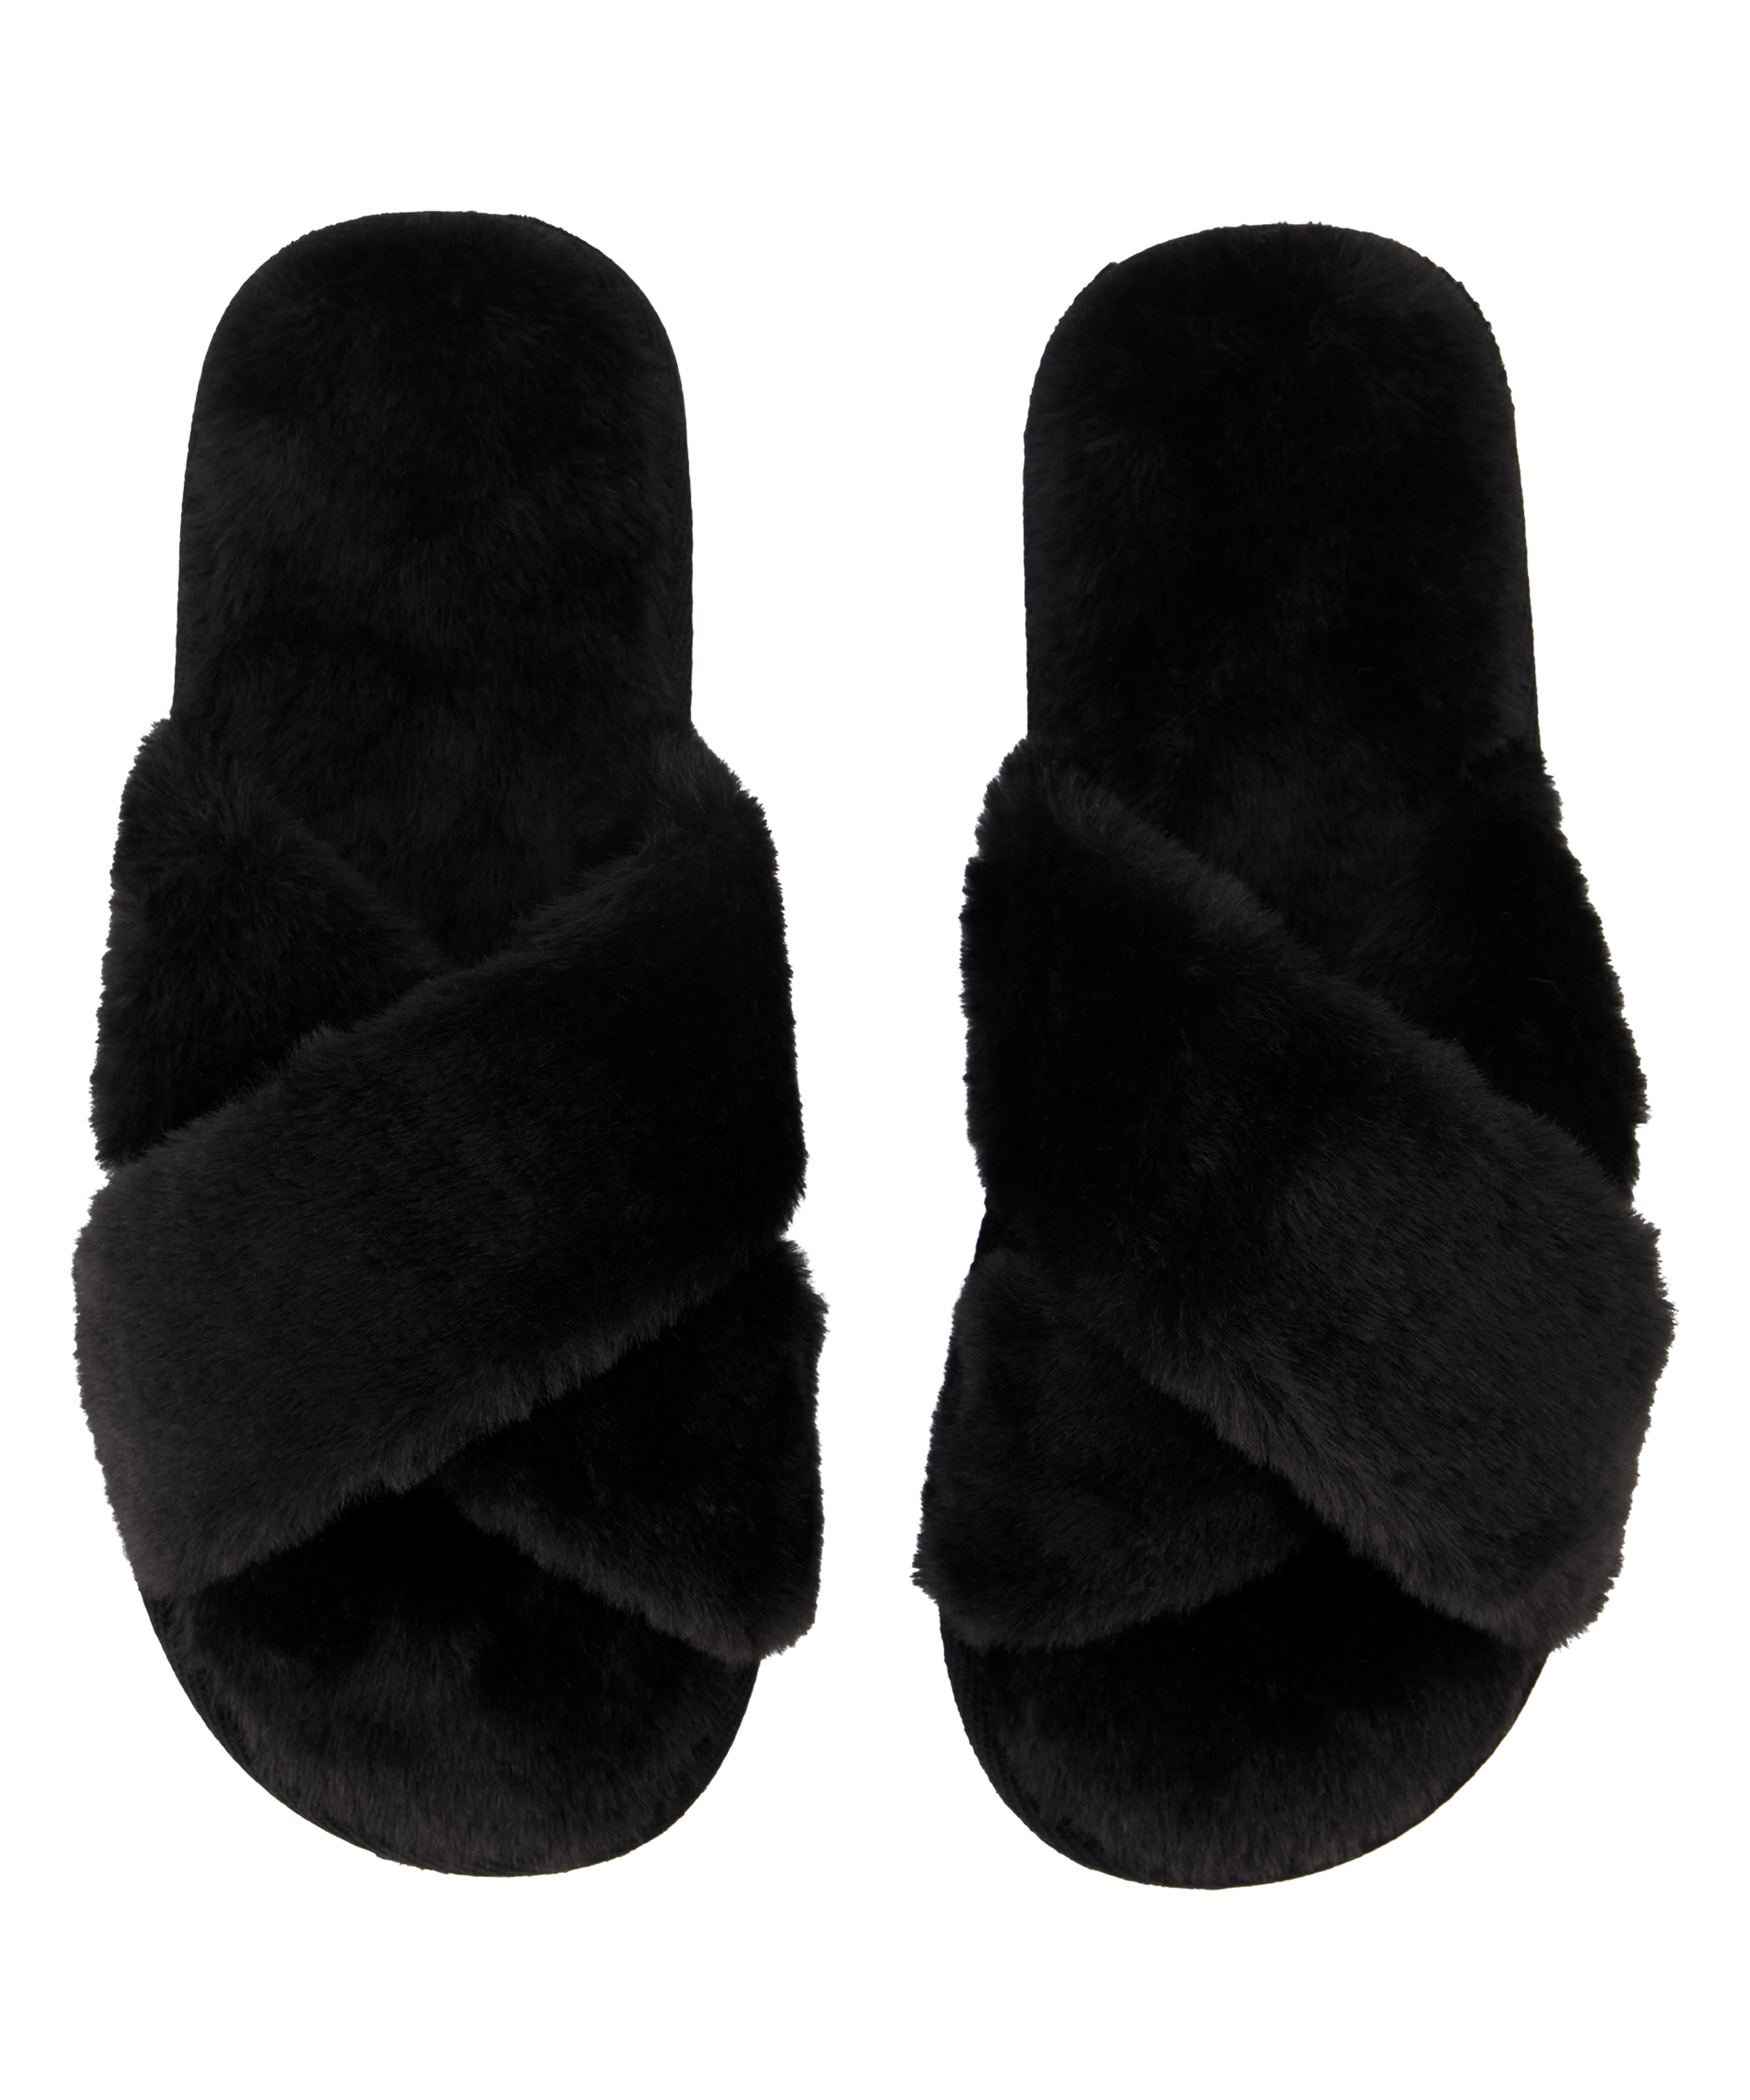 Crossed Fake Fur Slippers for €17.99 - Slippers - Hunkemöller